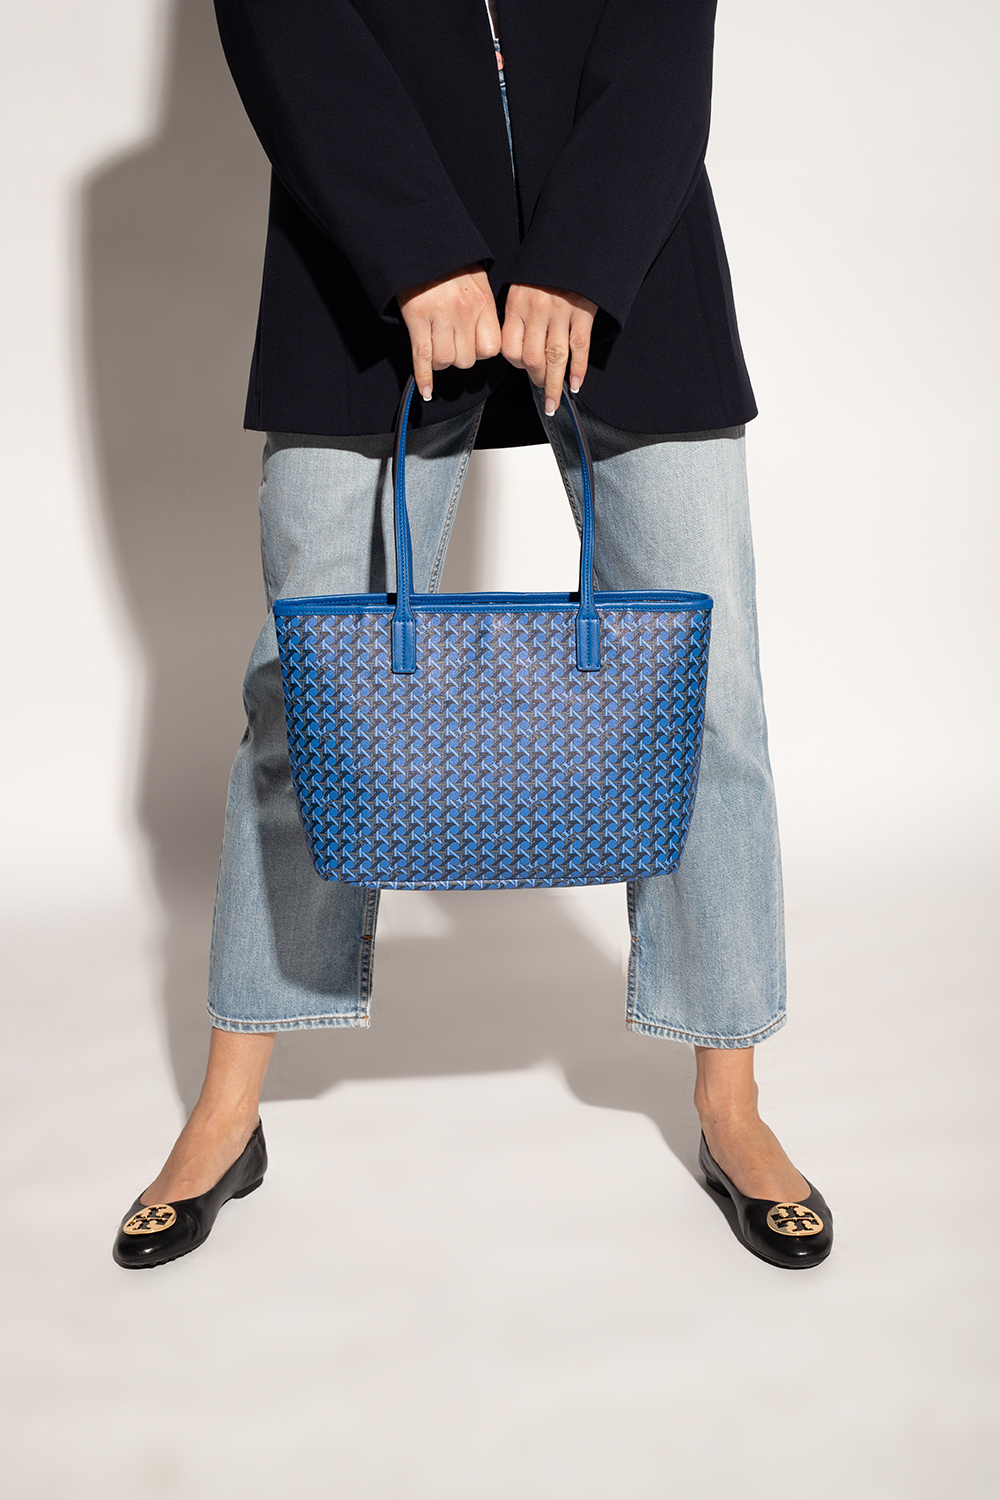 Tory Burch 'Basketweave Small' shopper bag, Women's Bags